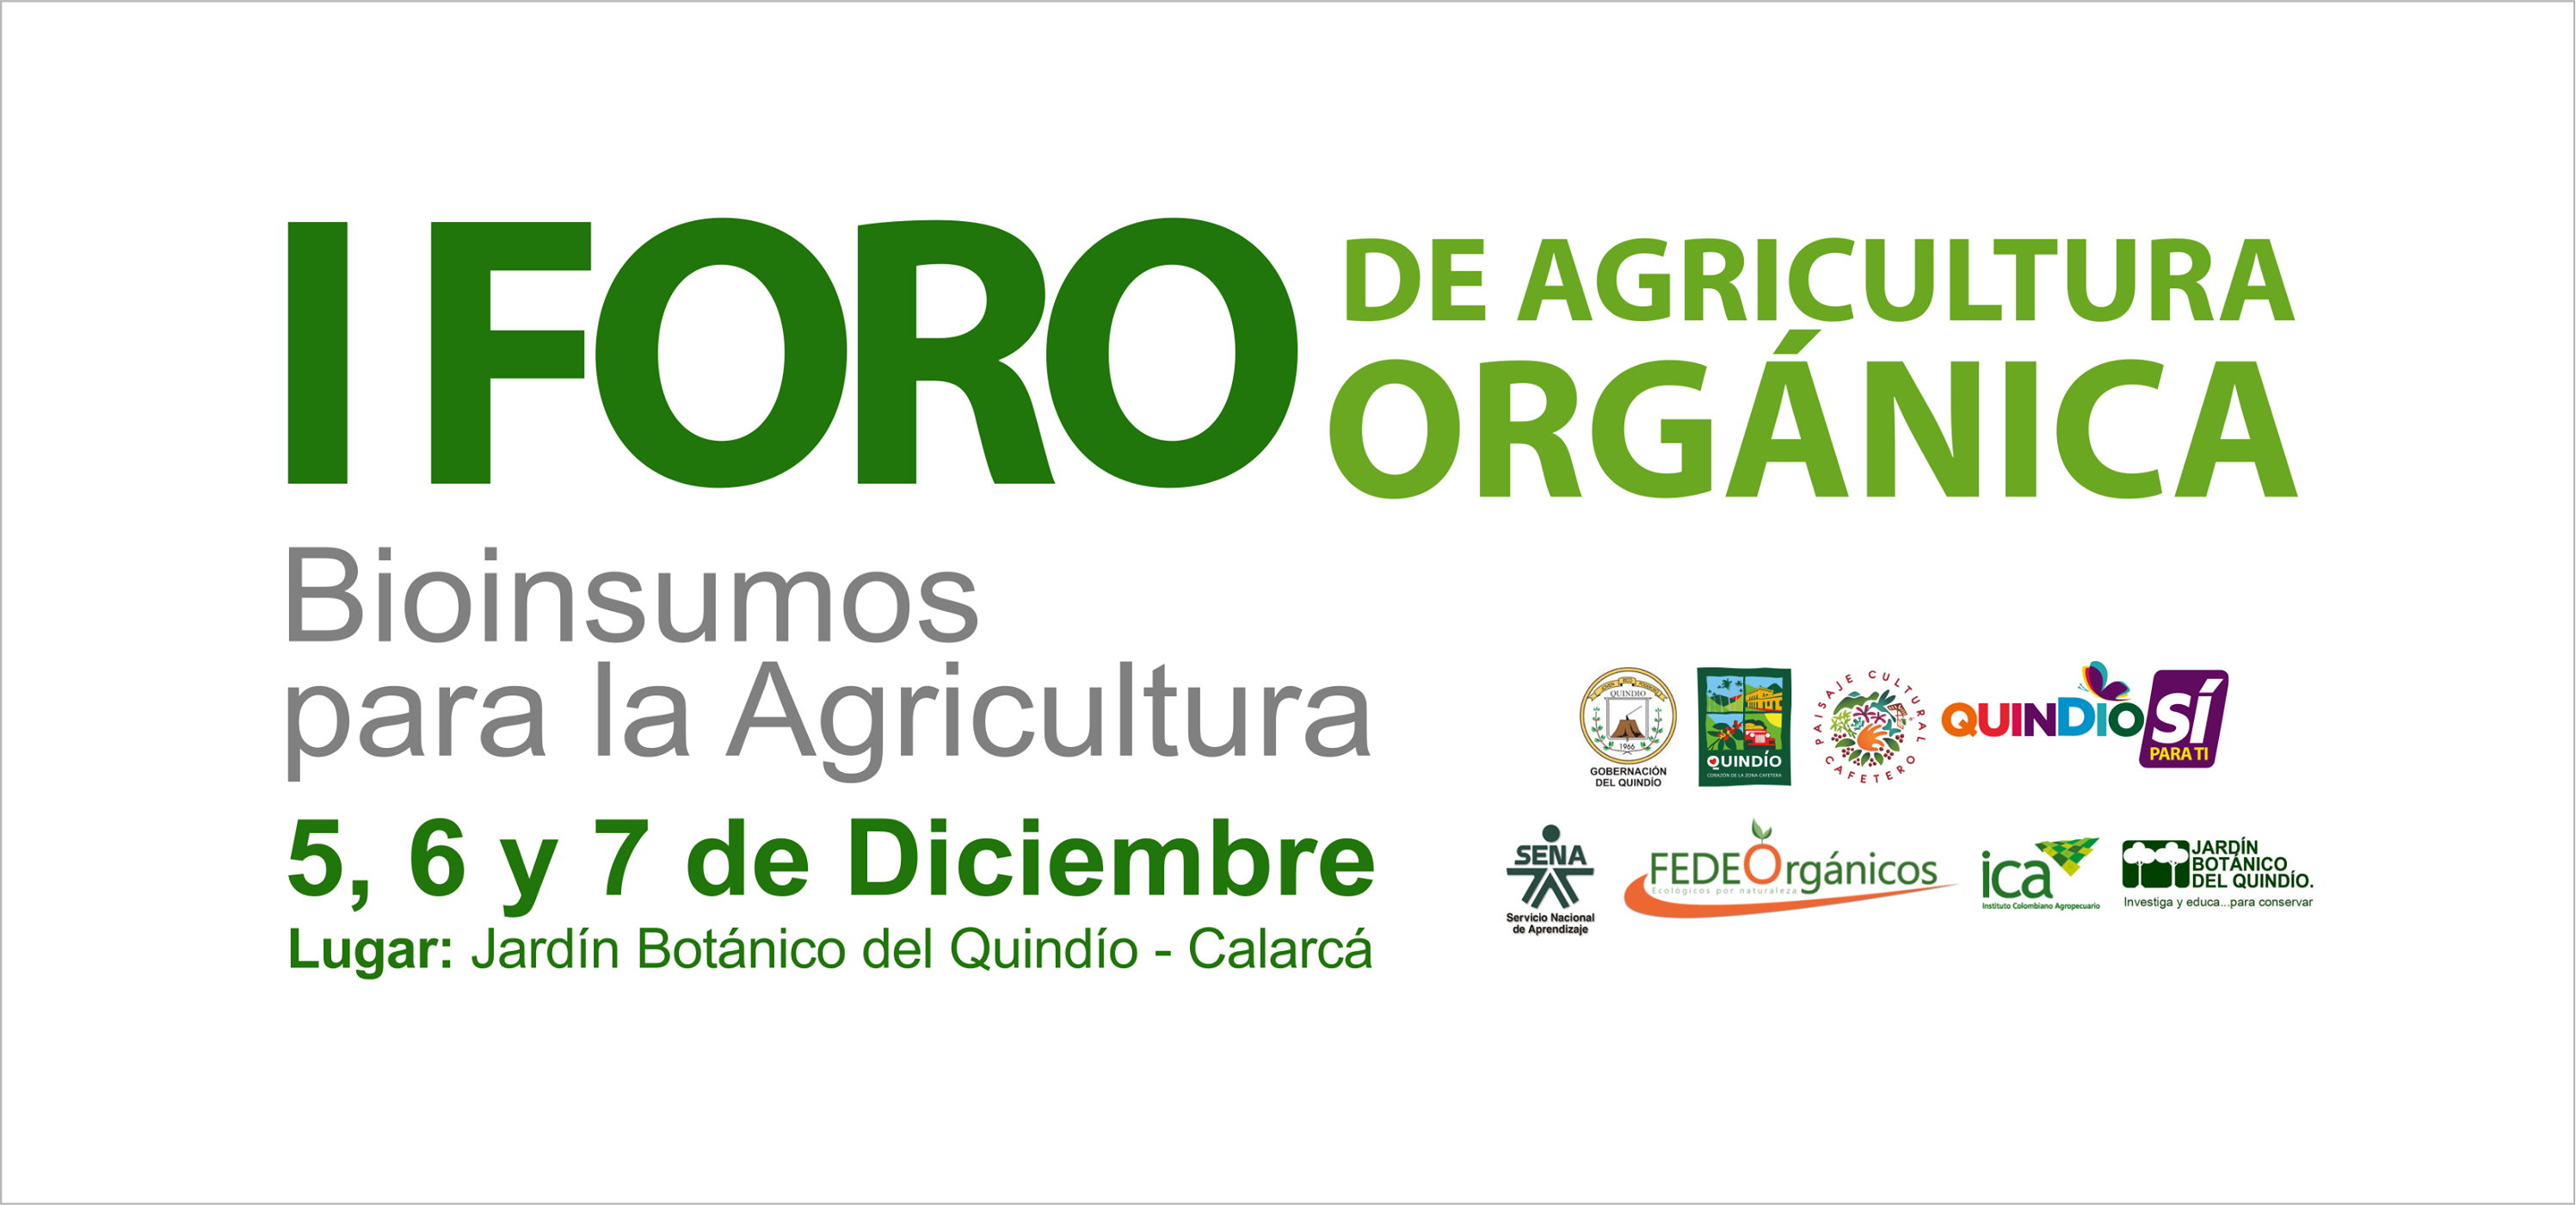 Hoy inicia el Primer Foro de Agricultura Orgánica liderado por la Gobernación del Quindío